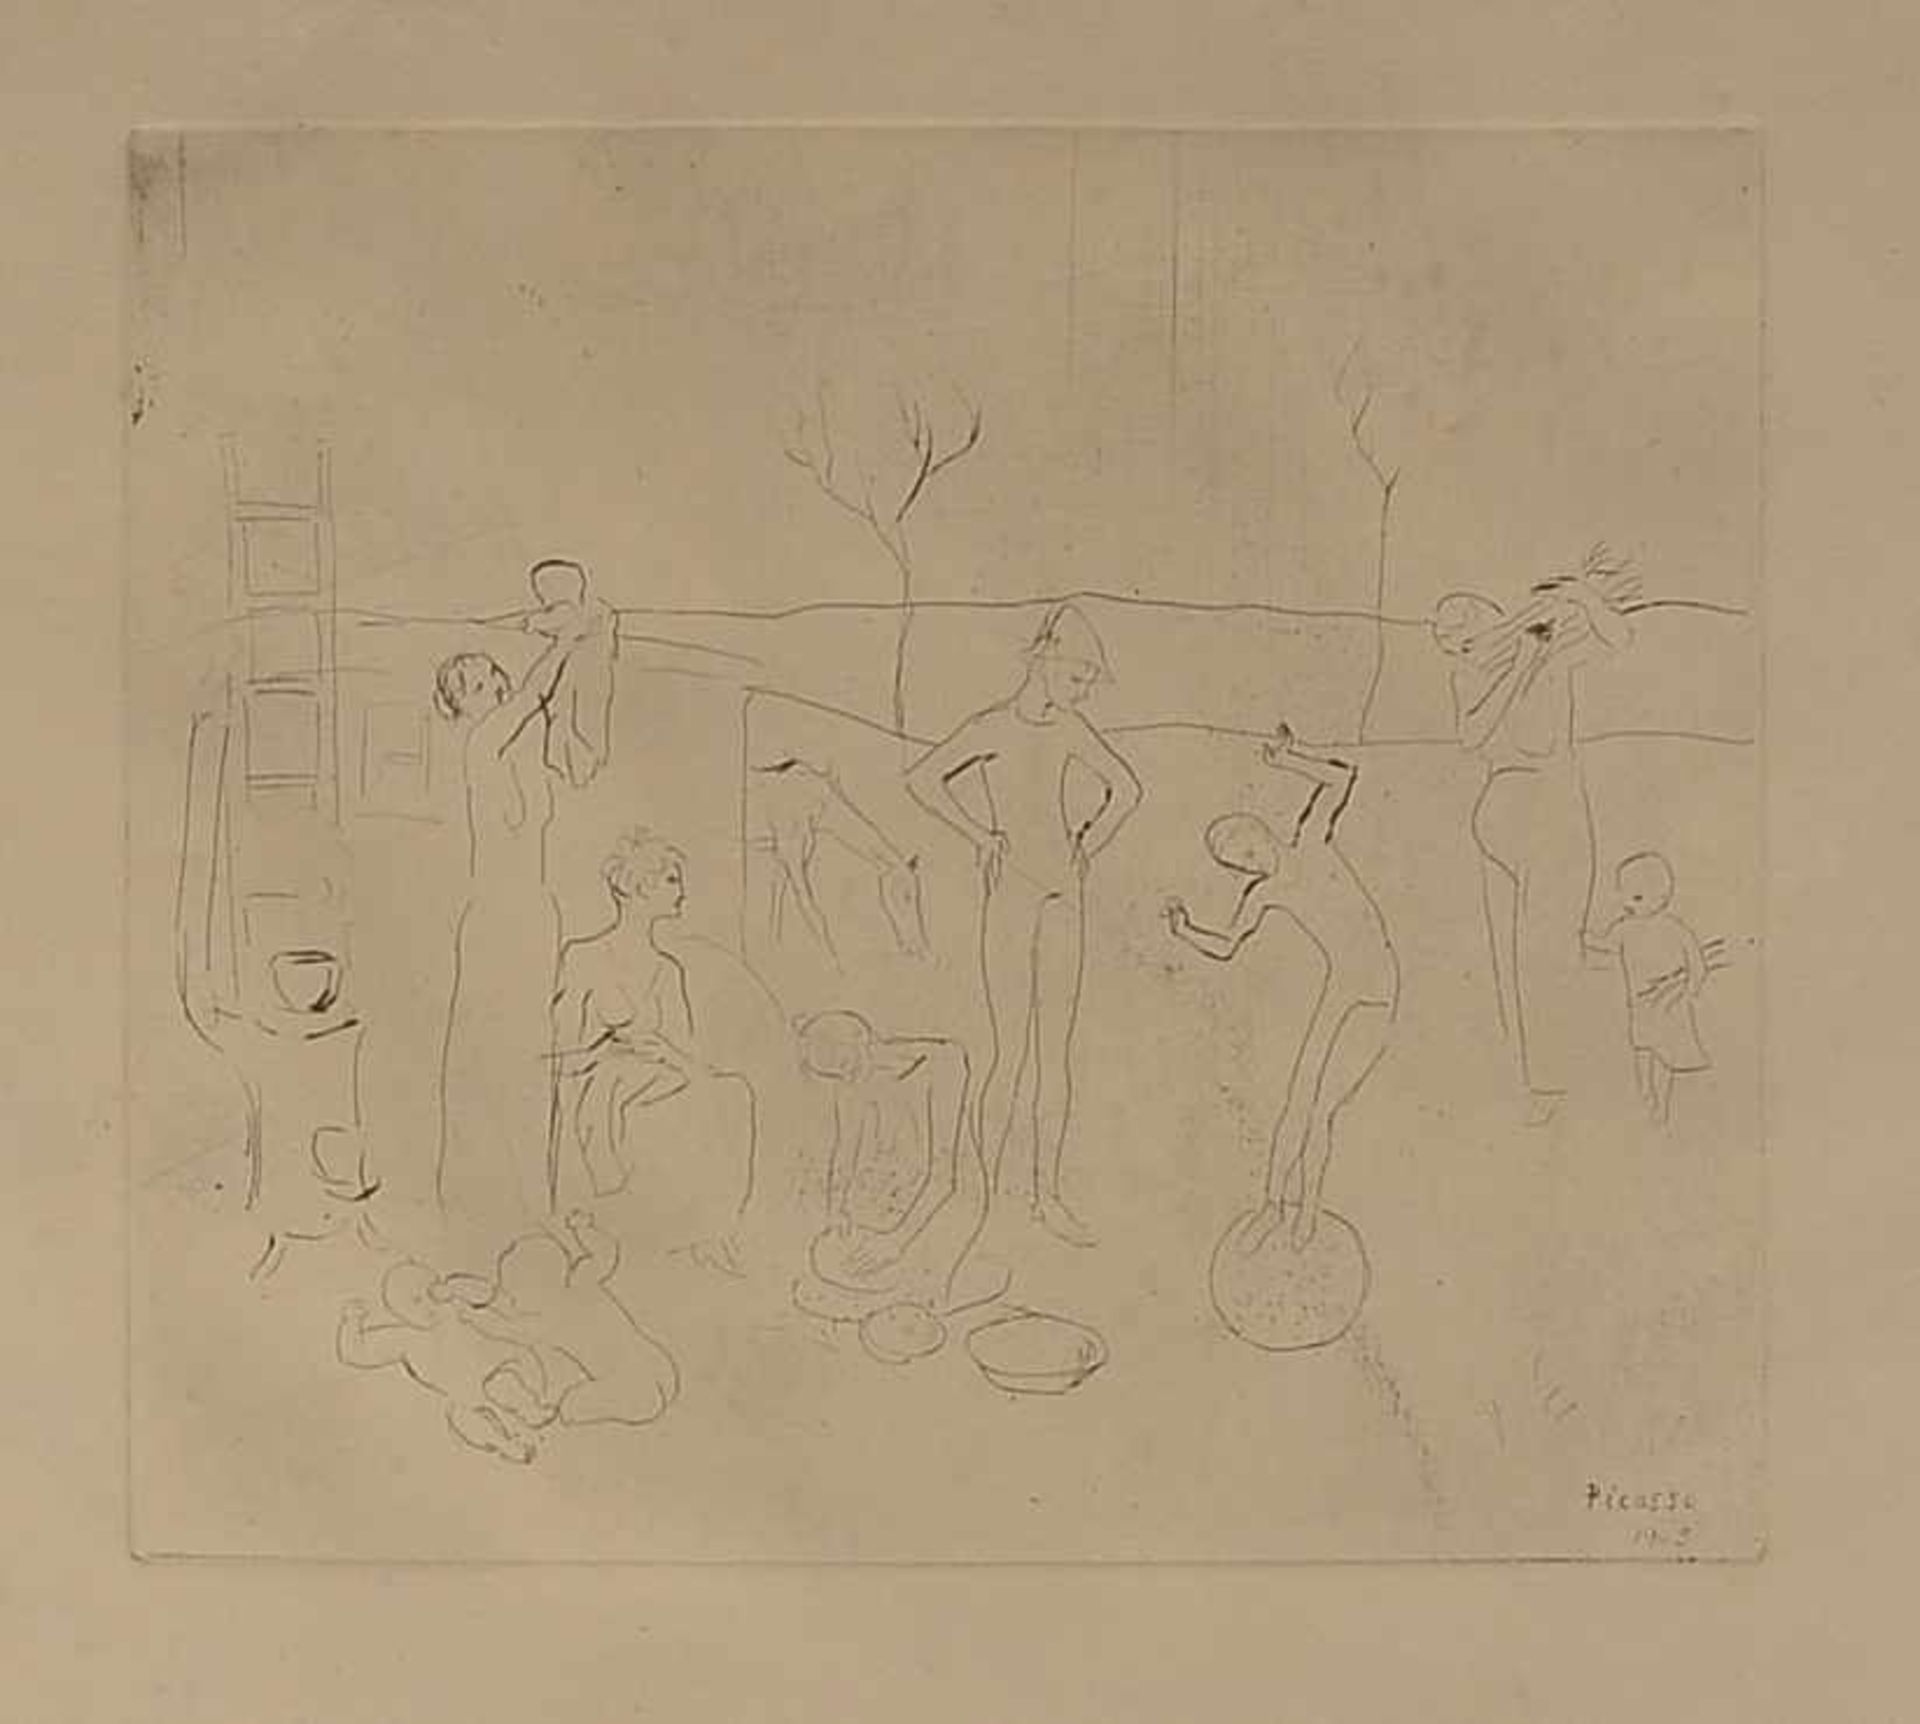 Picasso, Pablo (1881 Malaga - 1973 Mougins), 'Les Saltimbanques' (aus der gleichnamigen Serie),